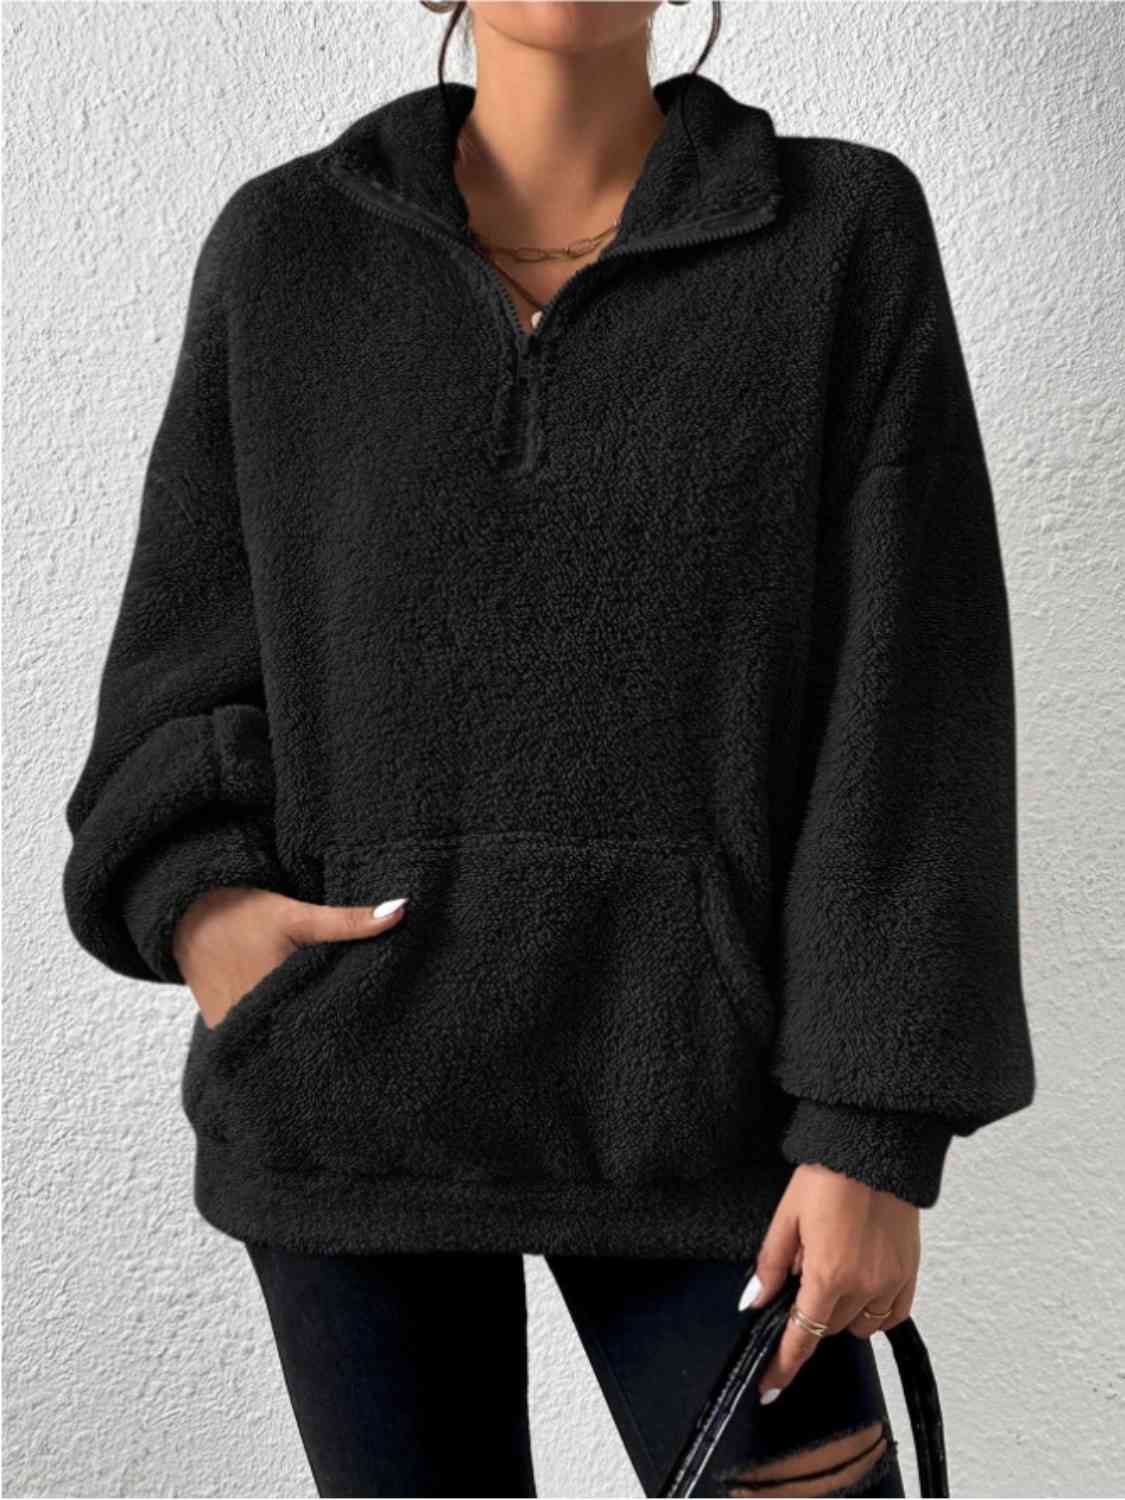 Women's Half-Zip Drop-Shoulder Sweatshirt with Pocket Black